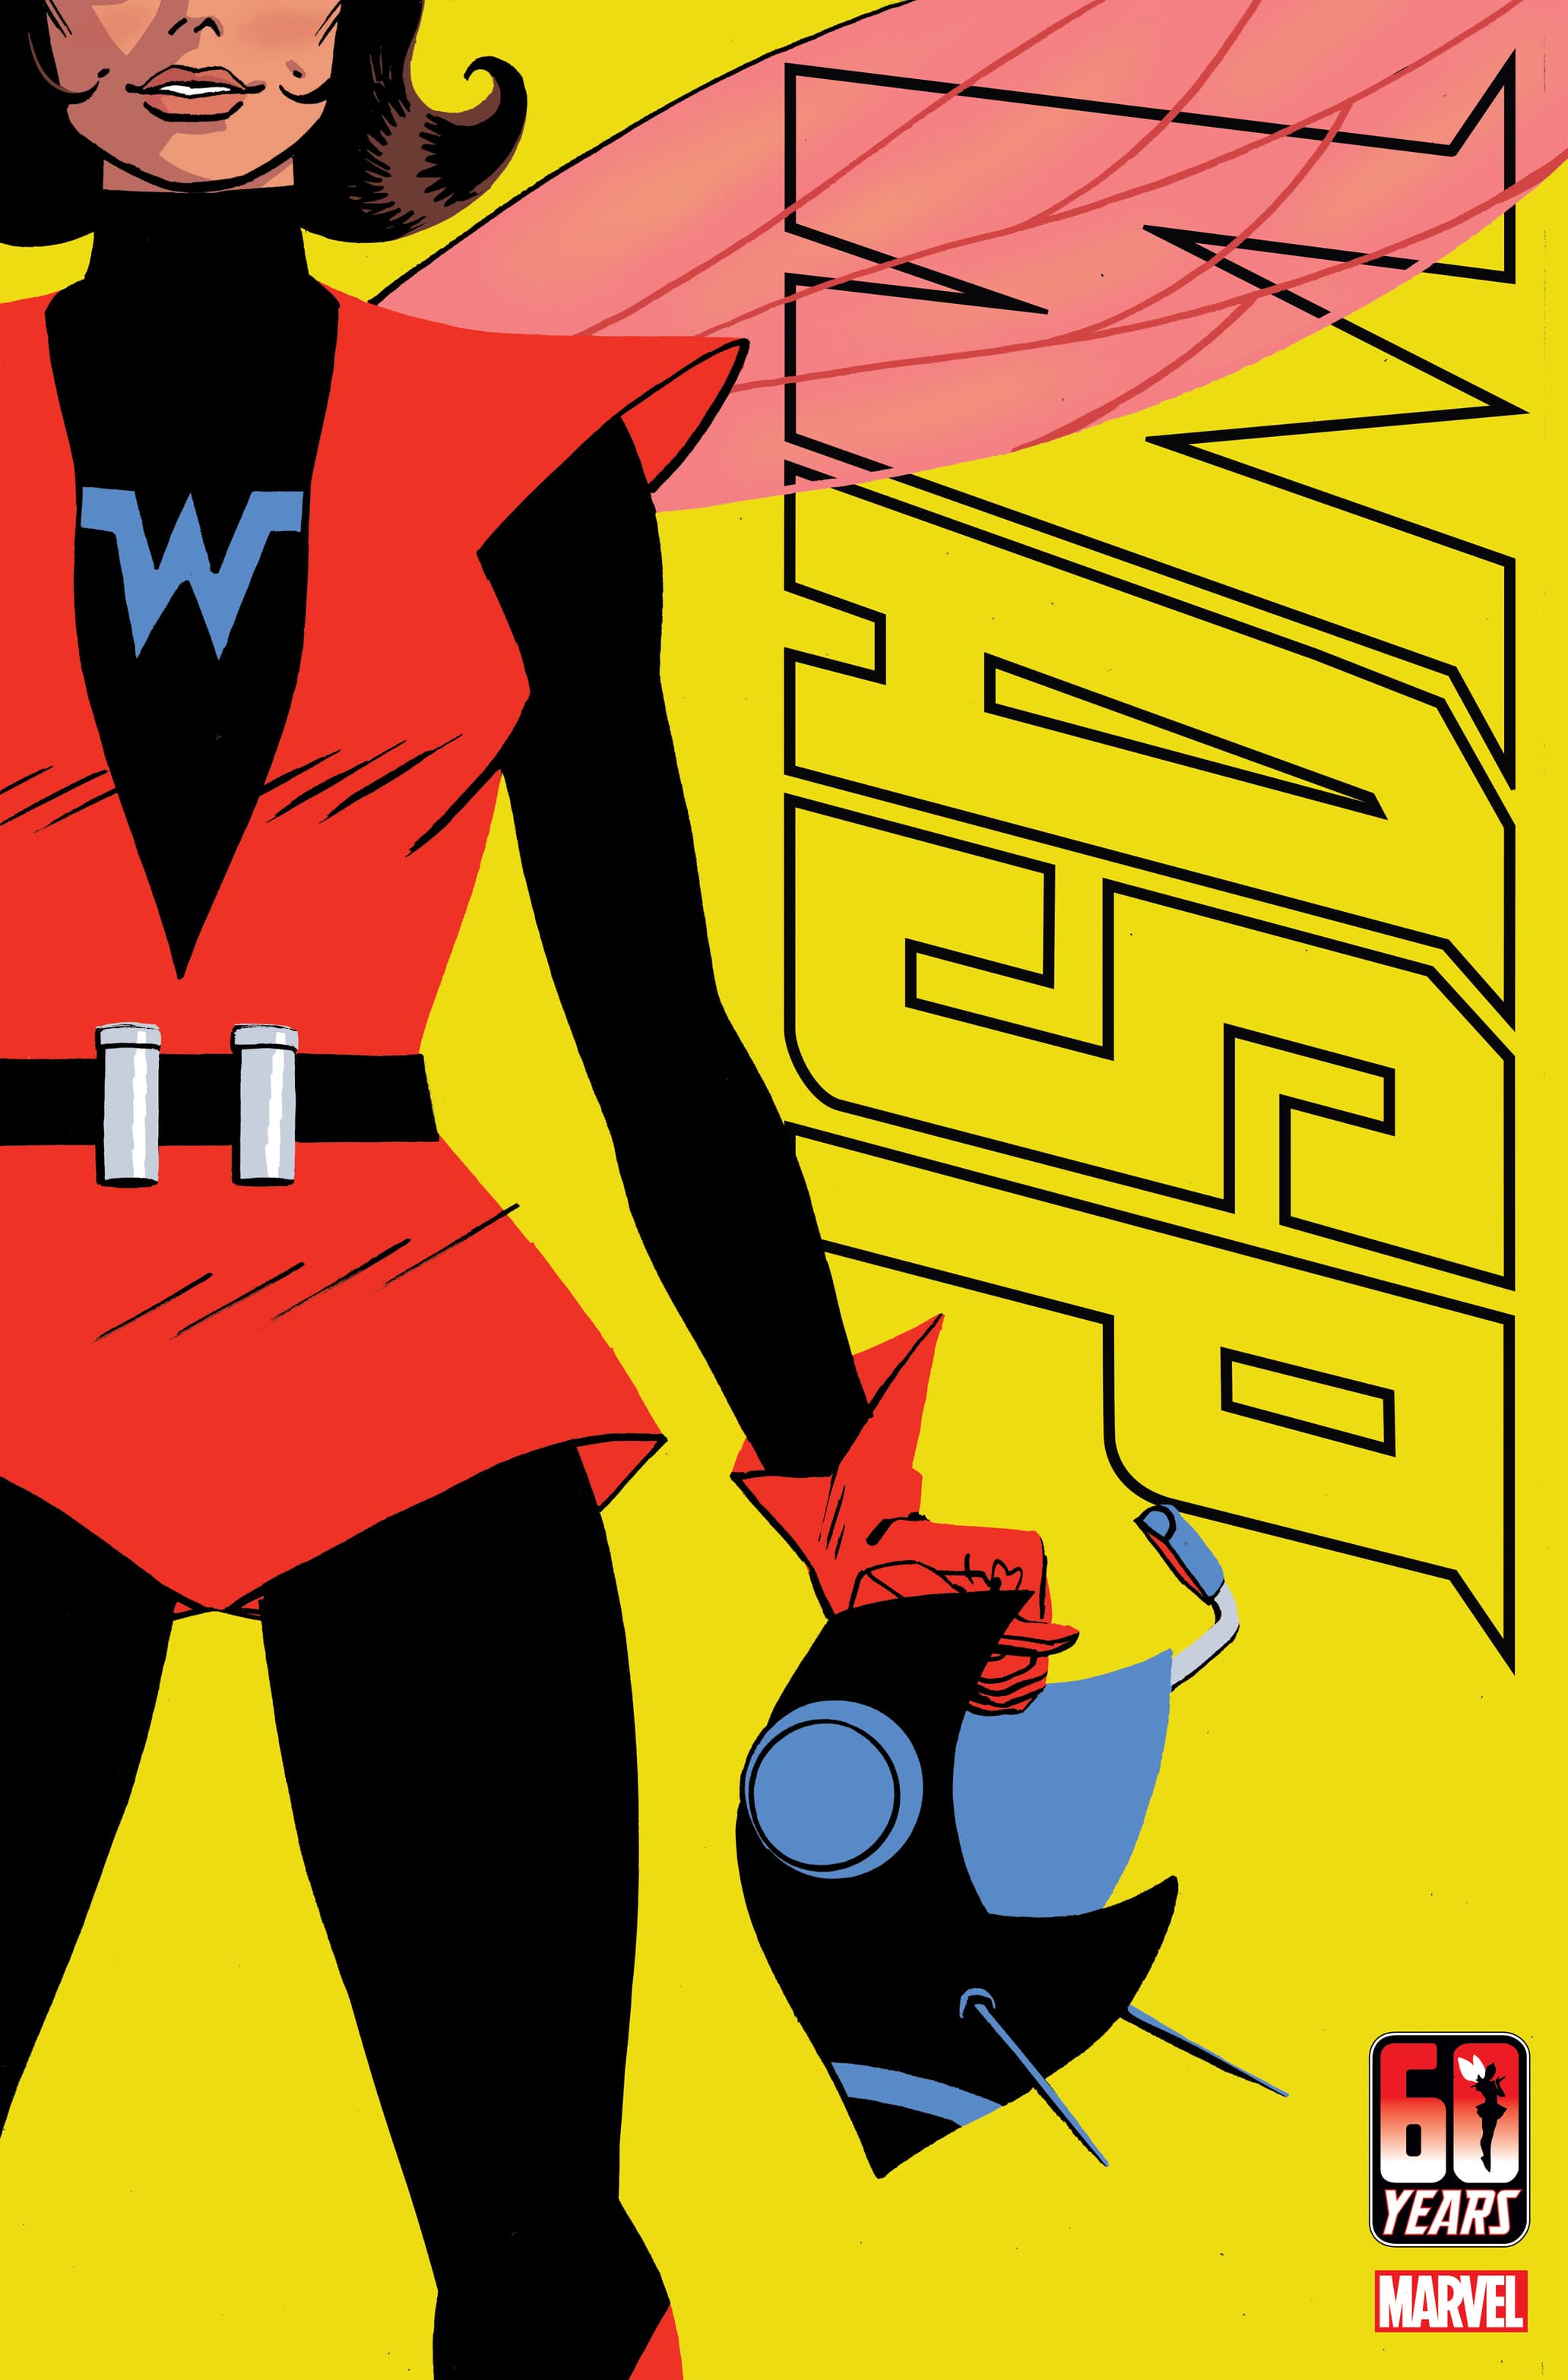 Janet Van Dyne Flies Higher Than Ever in AL Ewing and Kasia Nie's 'Wasp'  Comic Series | Marvel